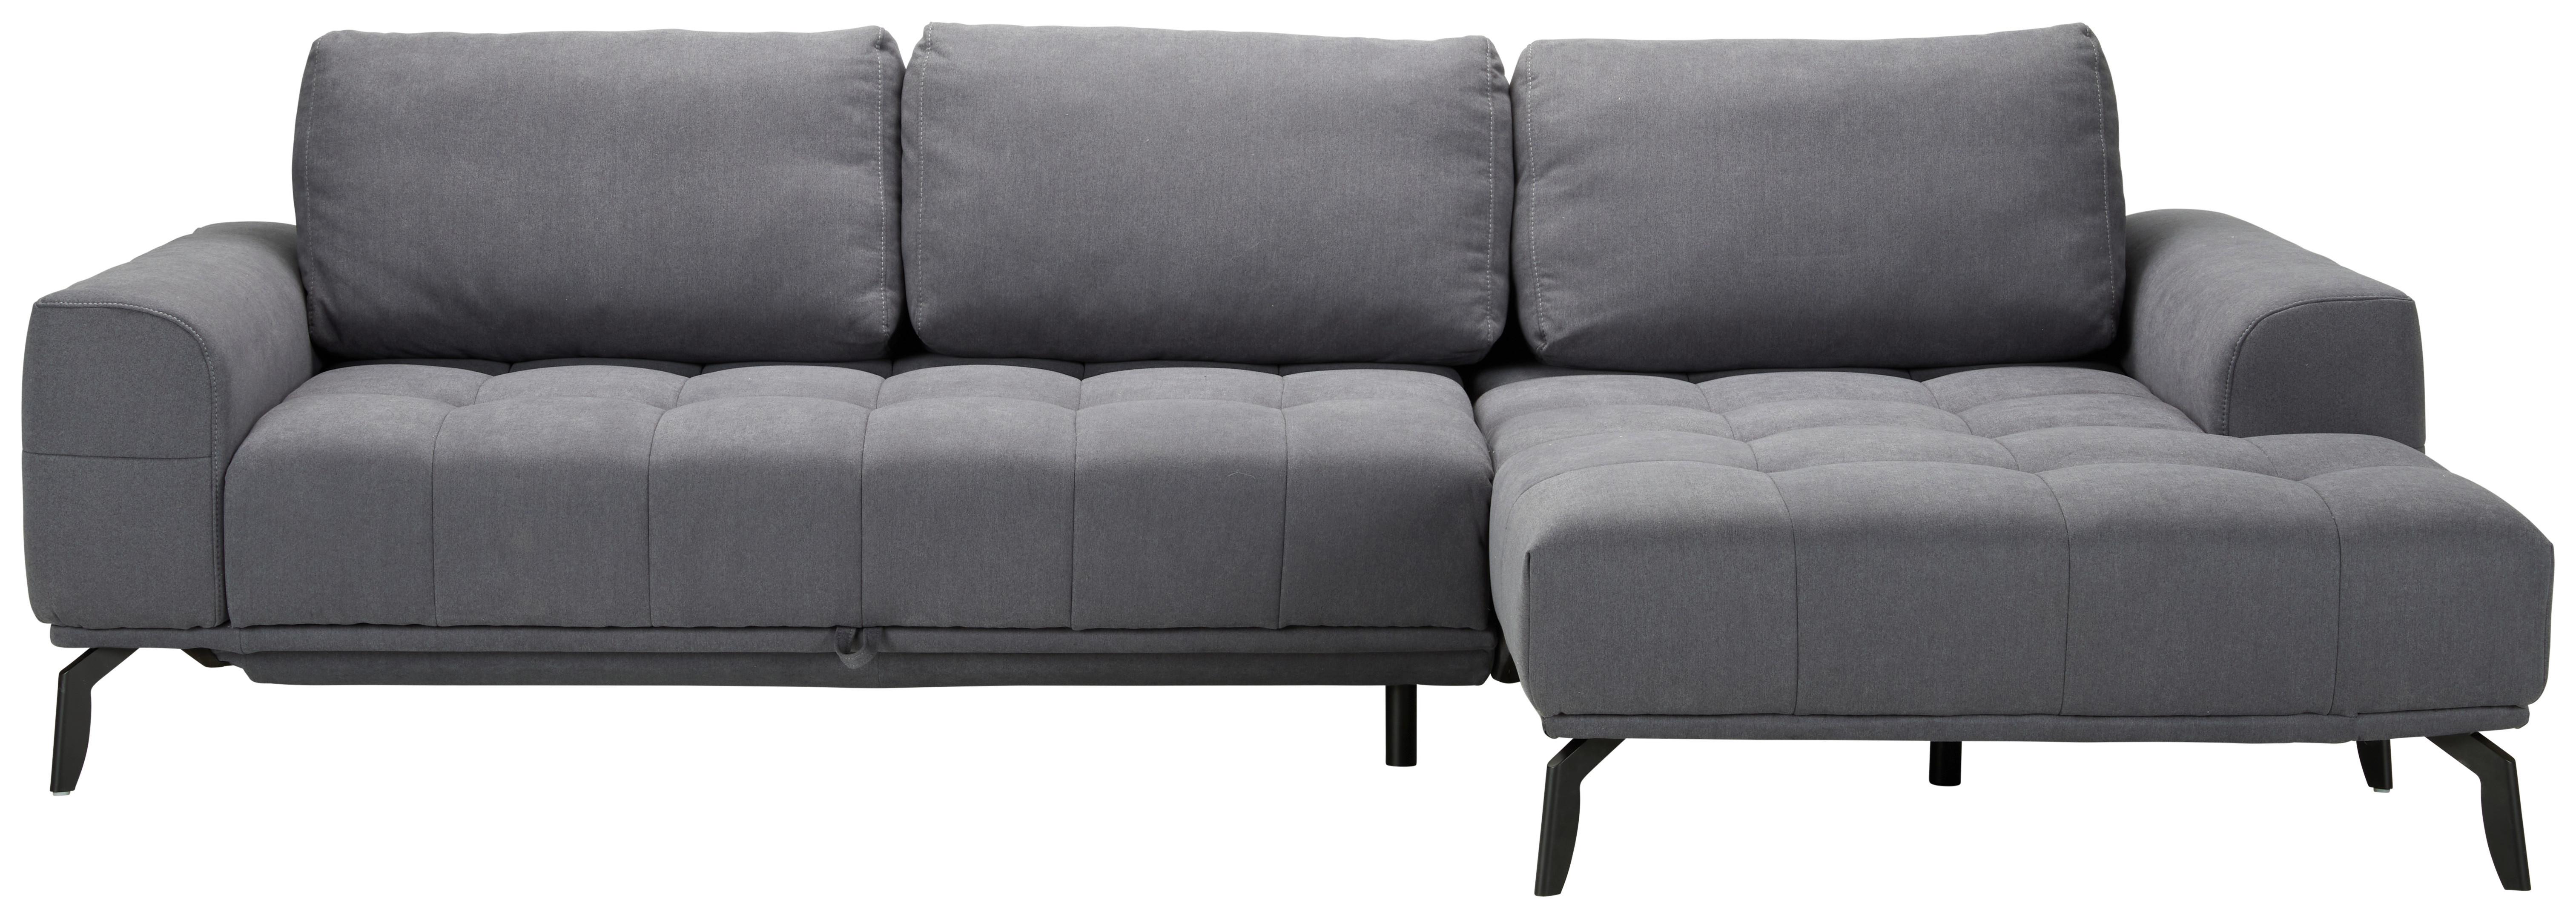 Sedežna Garnitura Tenerifa, Z Ležiščem - Moderno, tekstil (284/72/168cm) - Modern Living